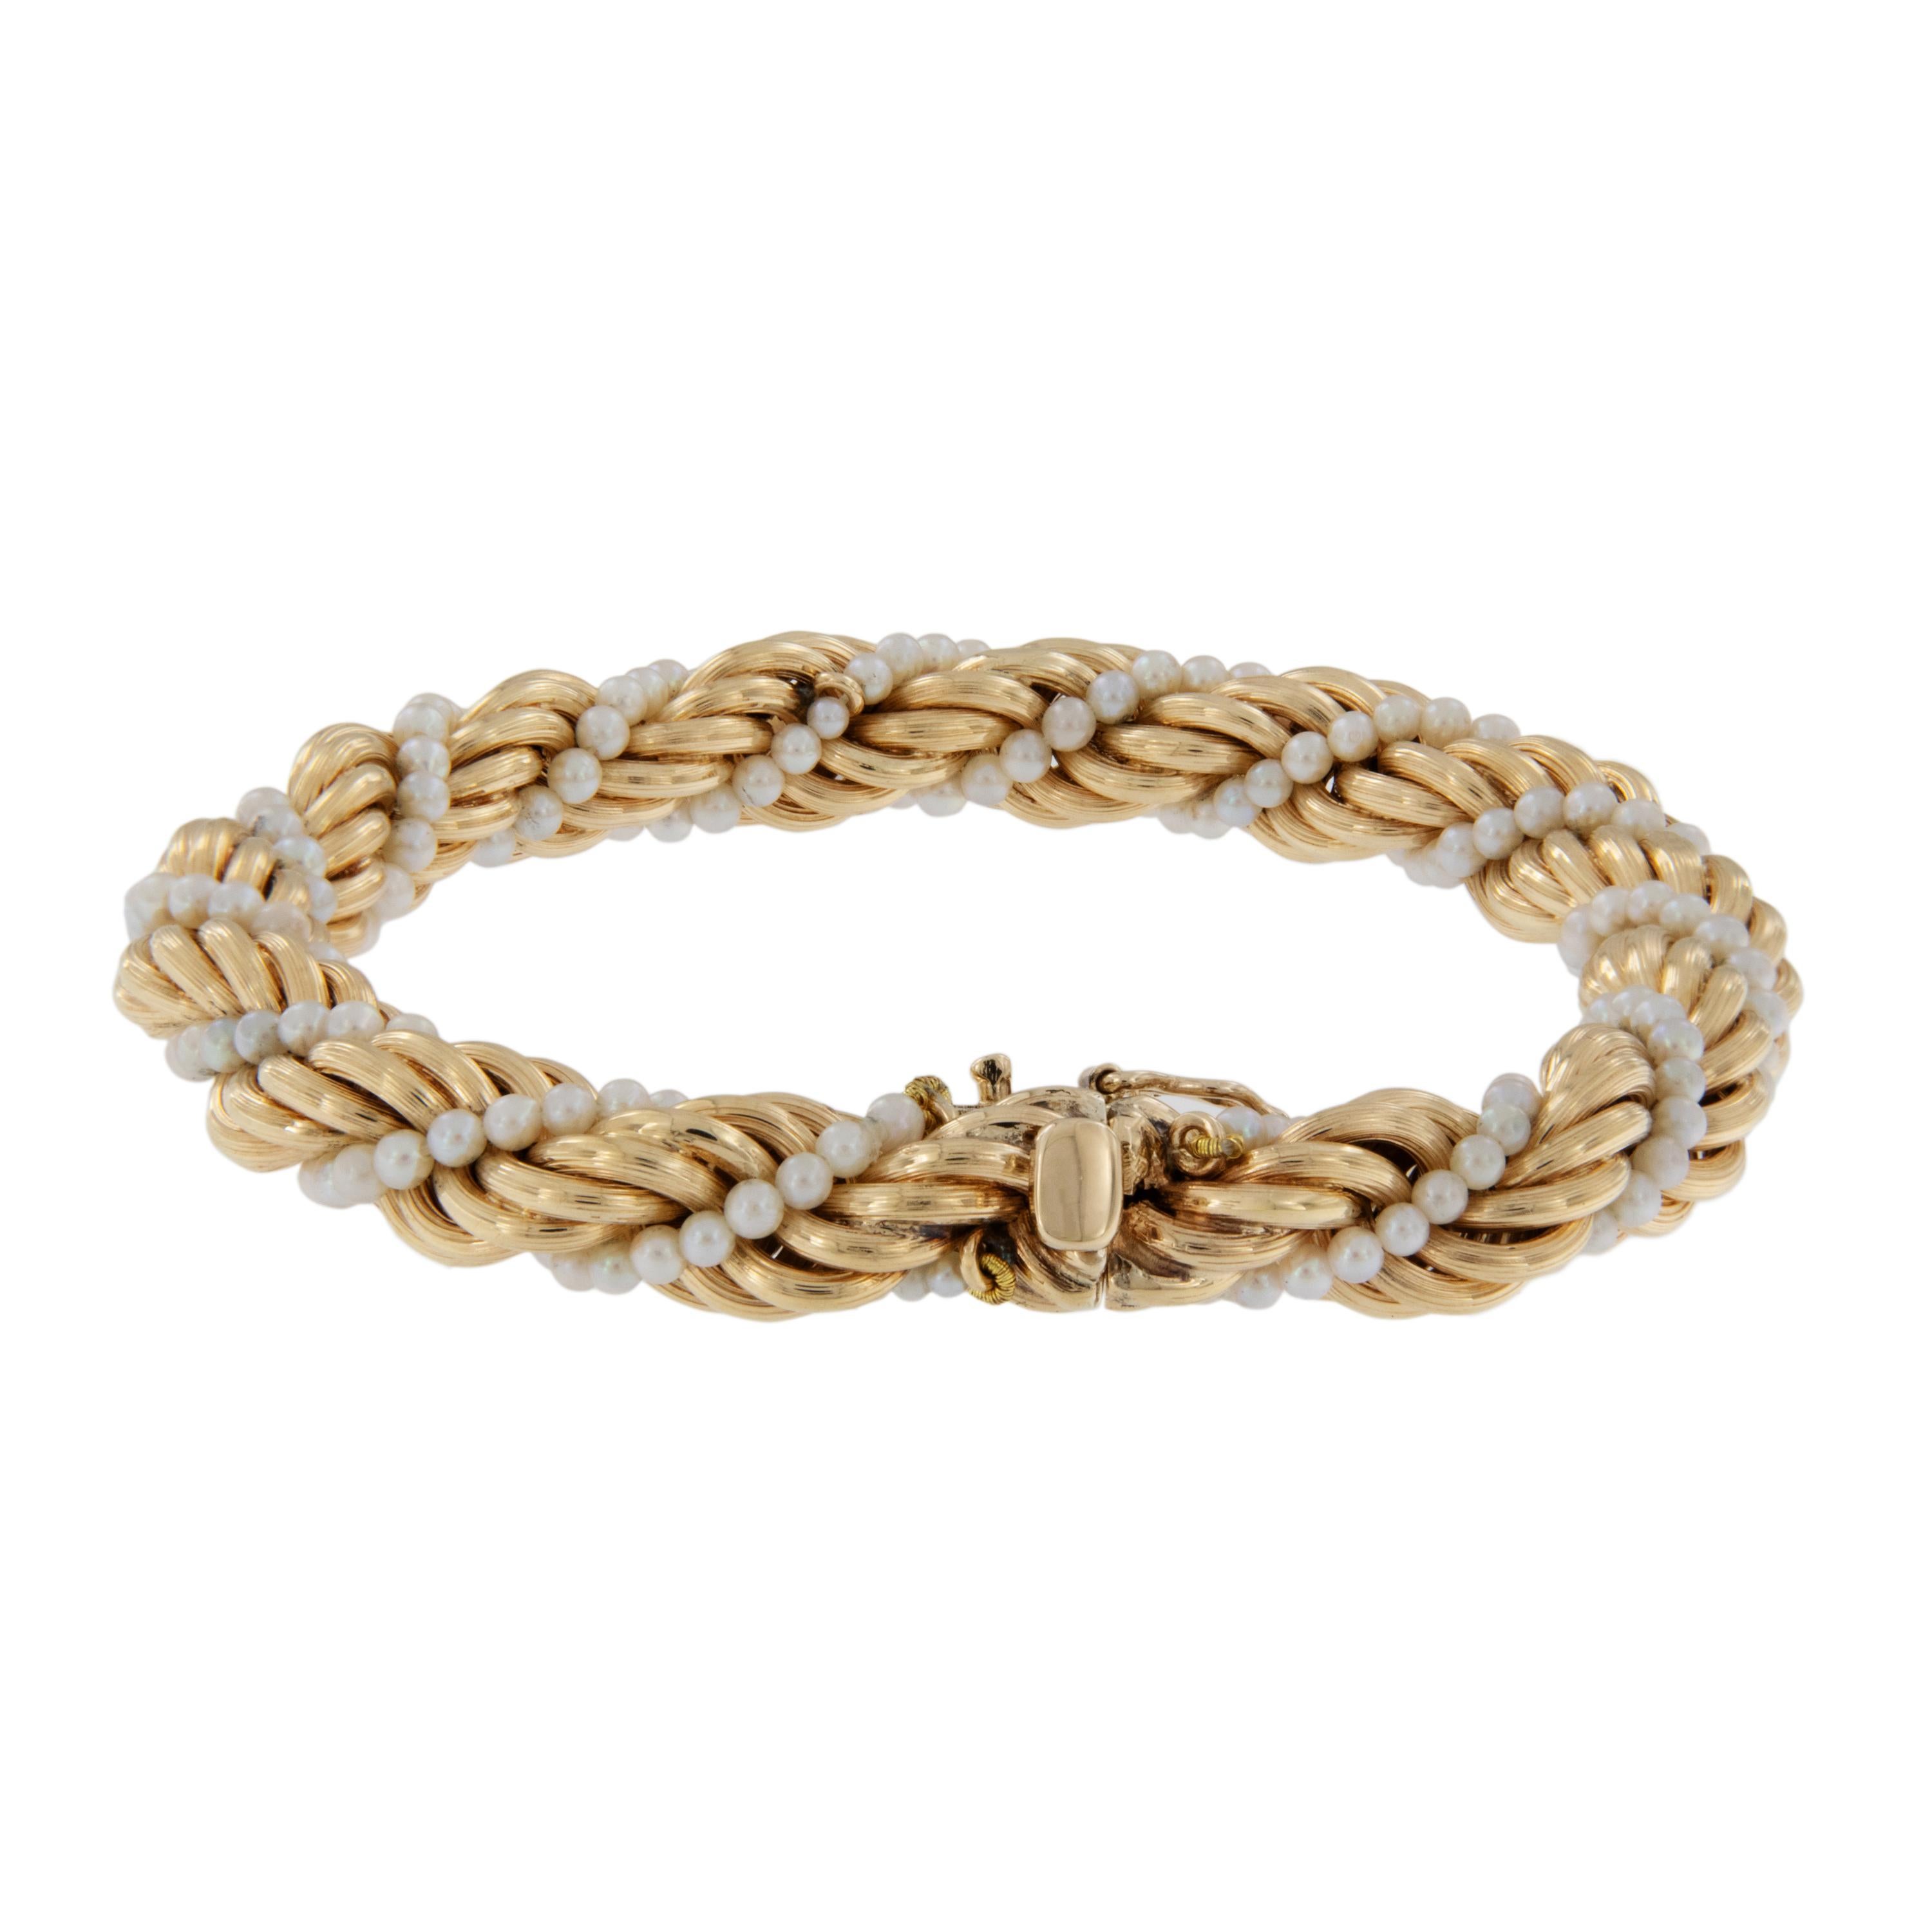 Quoi de plus classique que ce bracelet torsadé en chaîne de corde et perles de culture 14 carats ? Elles se marient parfaitement avec la corde nautique et les perles de culture de mer de 7,5